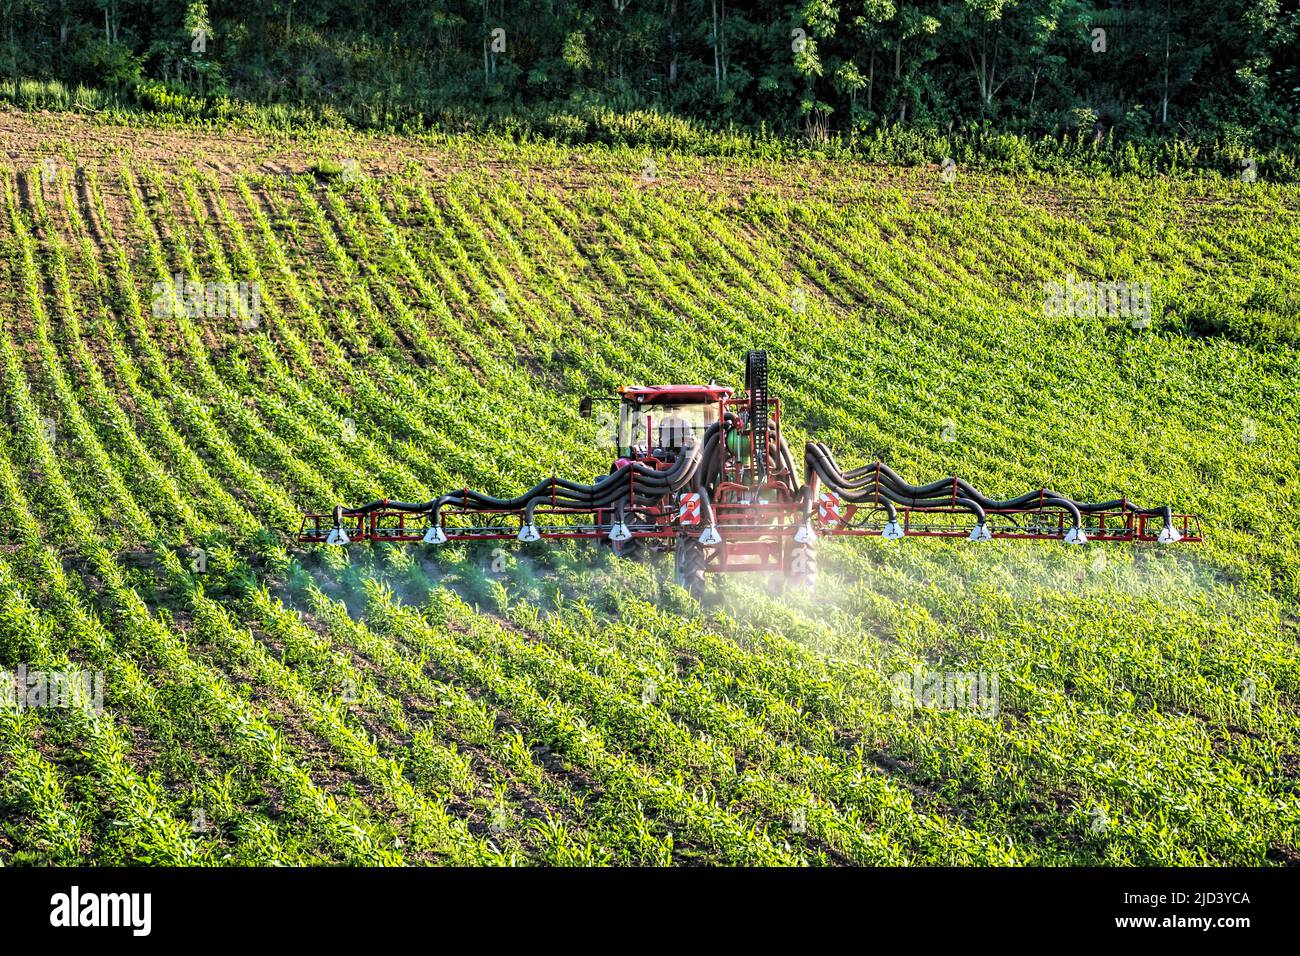 Tractor agrícola rociando pesticidas sobre el campo de plantas de maíz de maduración Foto de stock